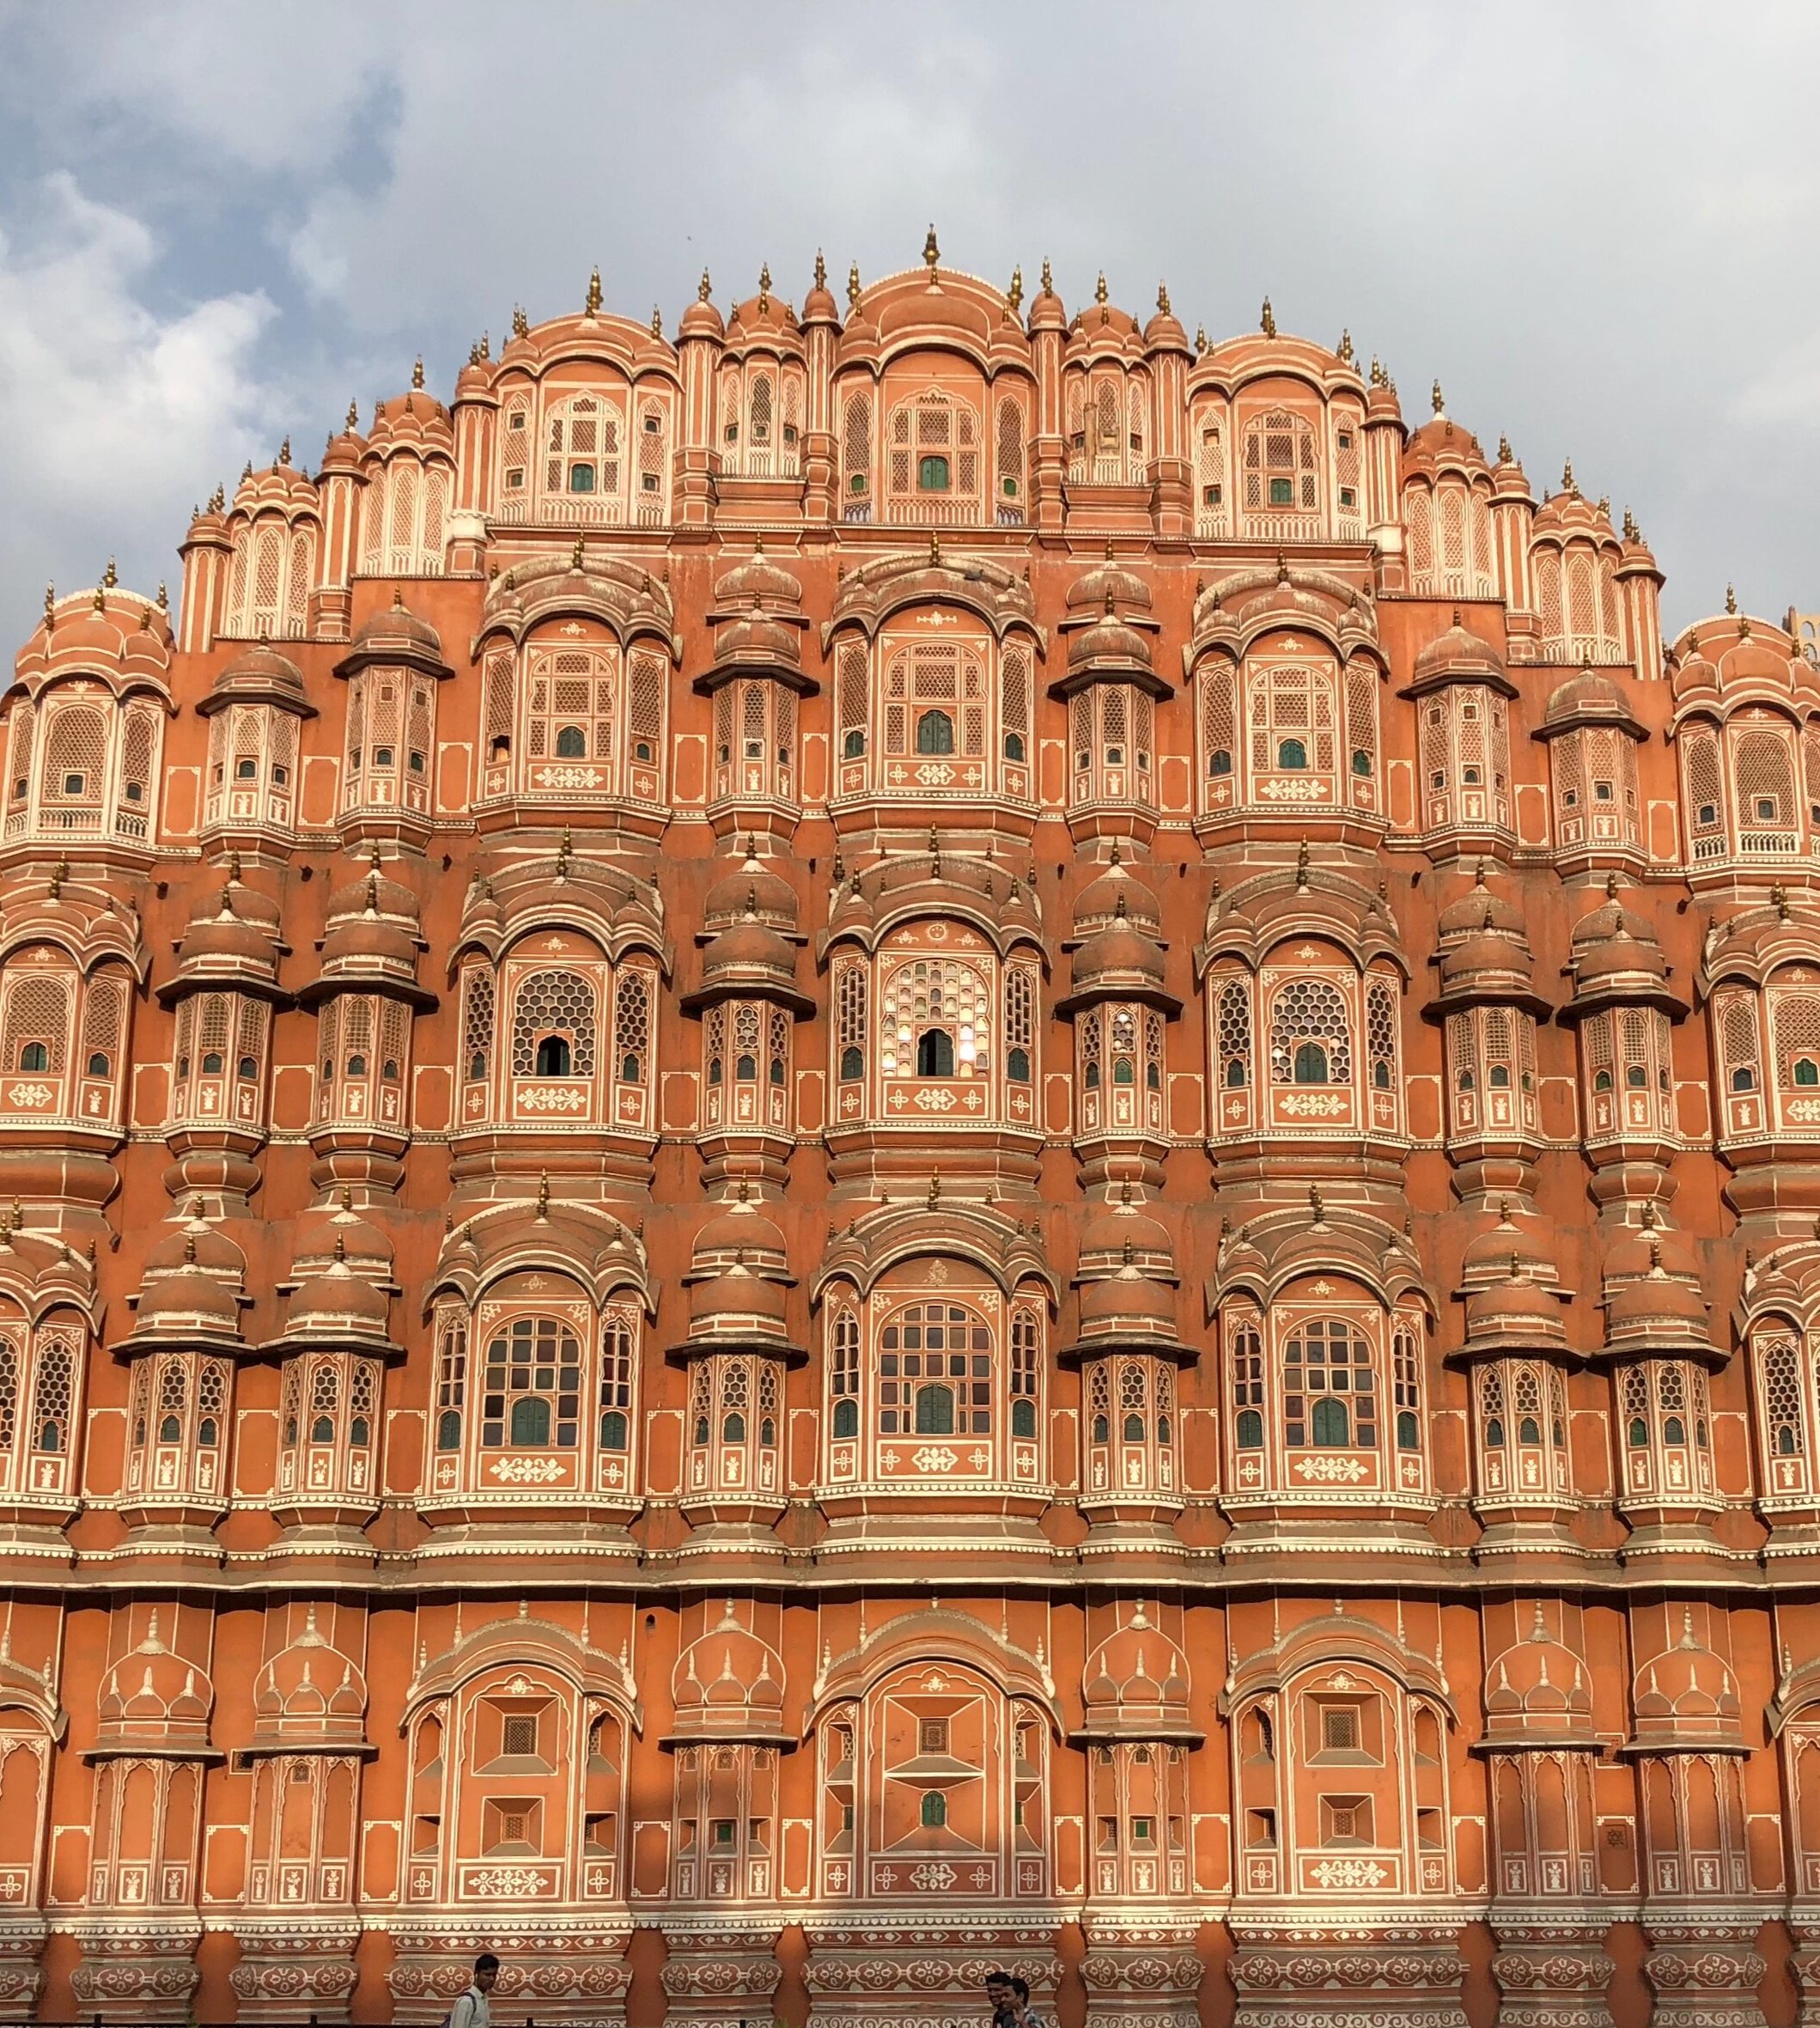 Hawa Mahal palace in Jaipur, India 